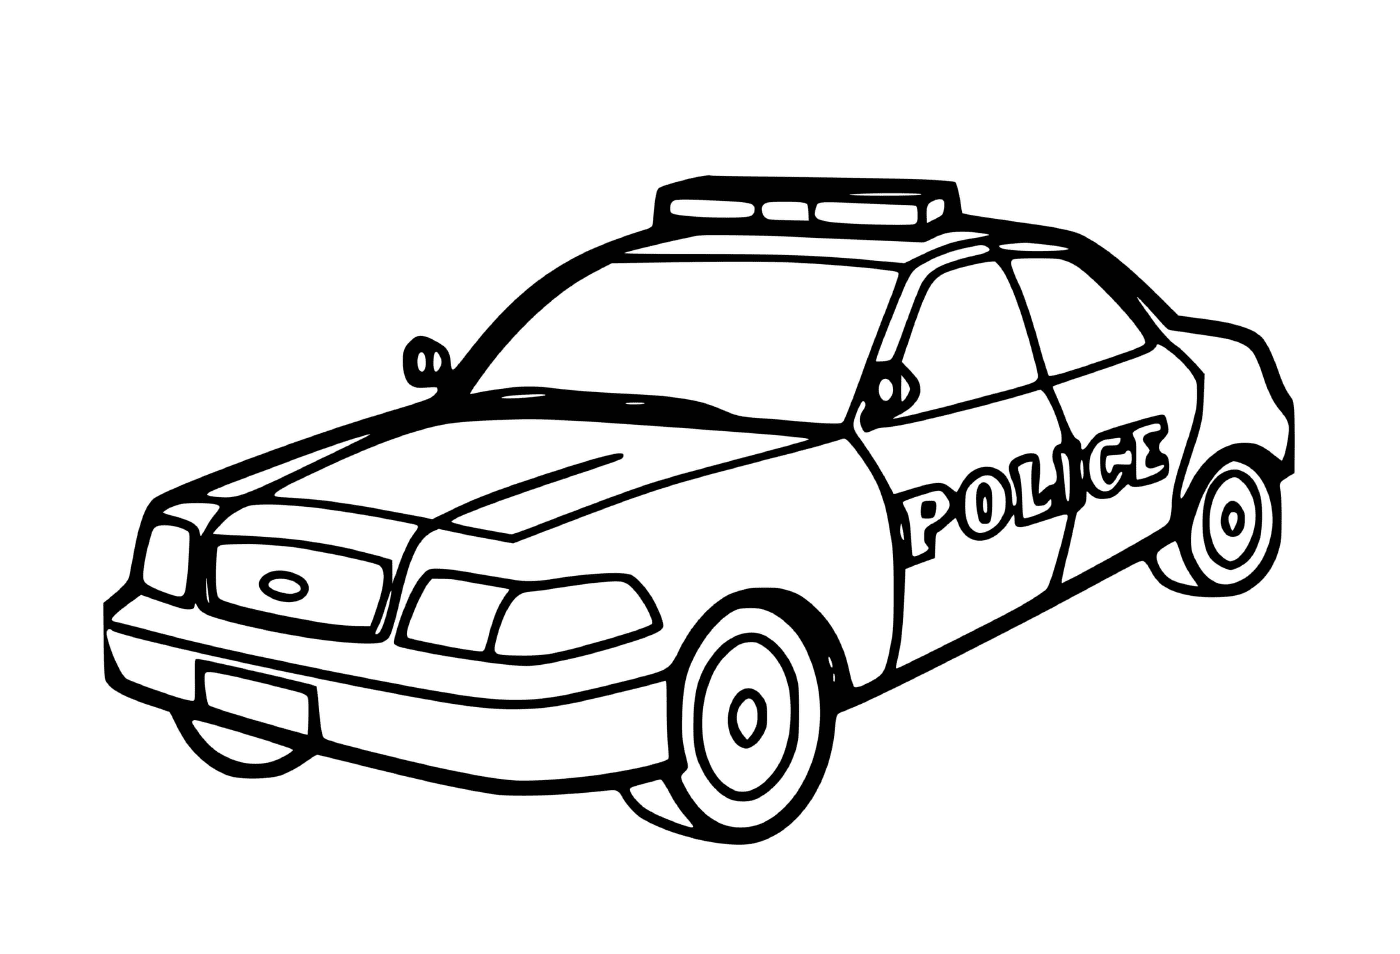  سيارة شرطة الولايات المتحدة الأمريكية 